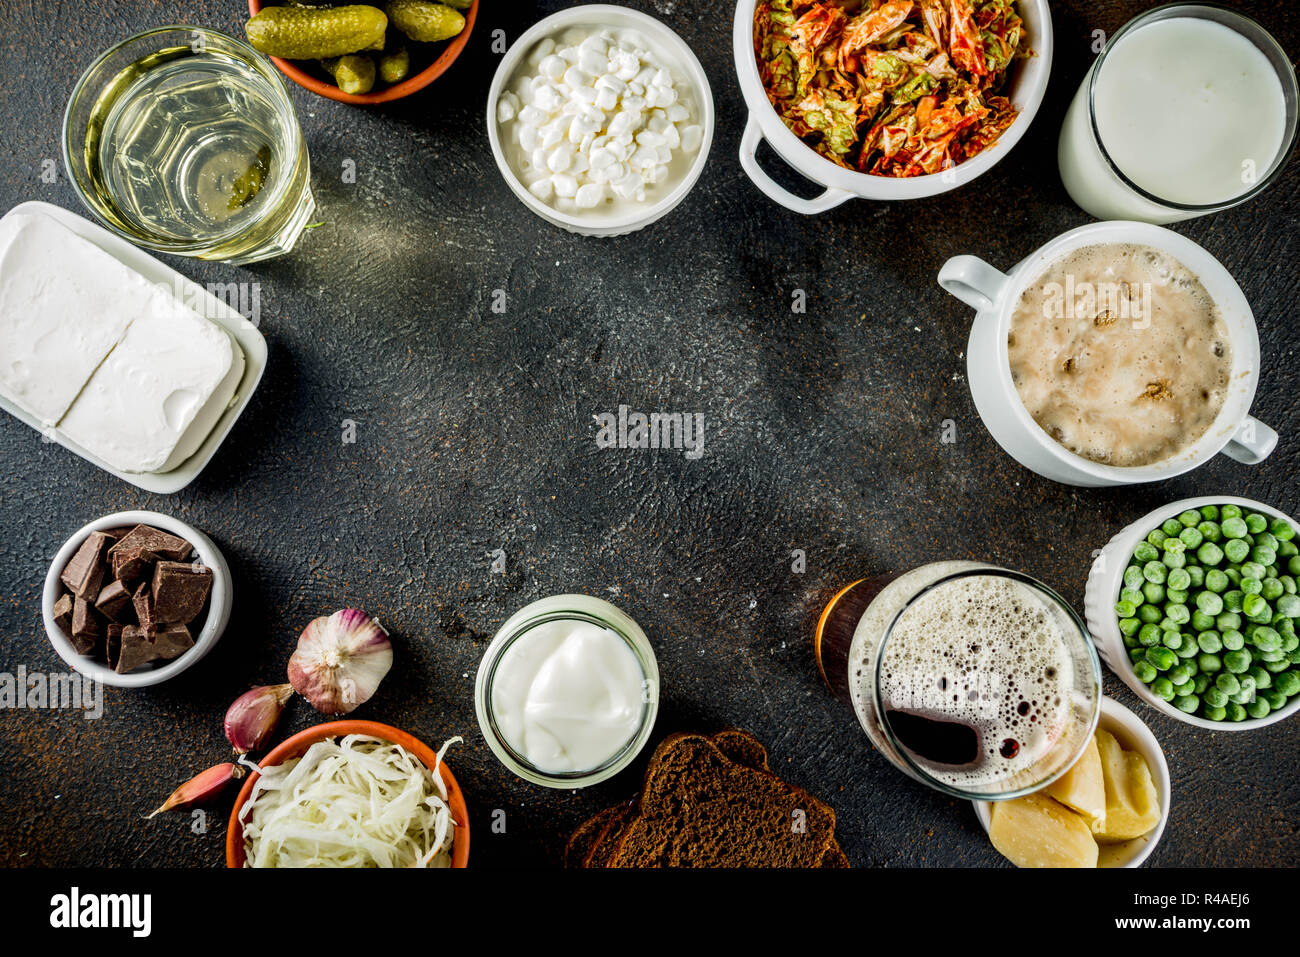 Super gesunden probiotischen fermentierter Lebensmittel, Getränke, Zutaten, auf dunklen konkreten Hintergrund Kopie Raum, Ansicht von oben Stockfoto